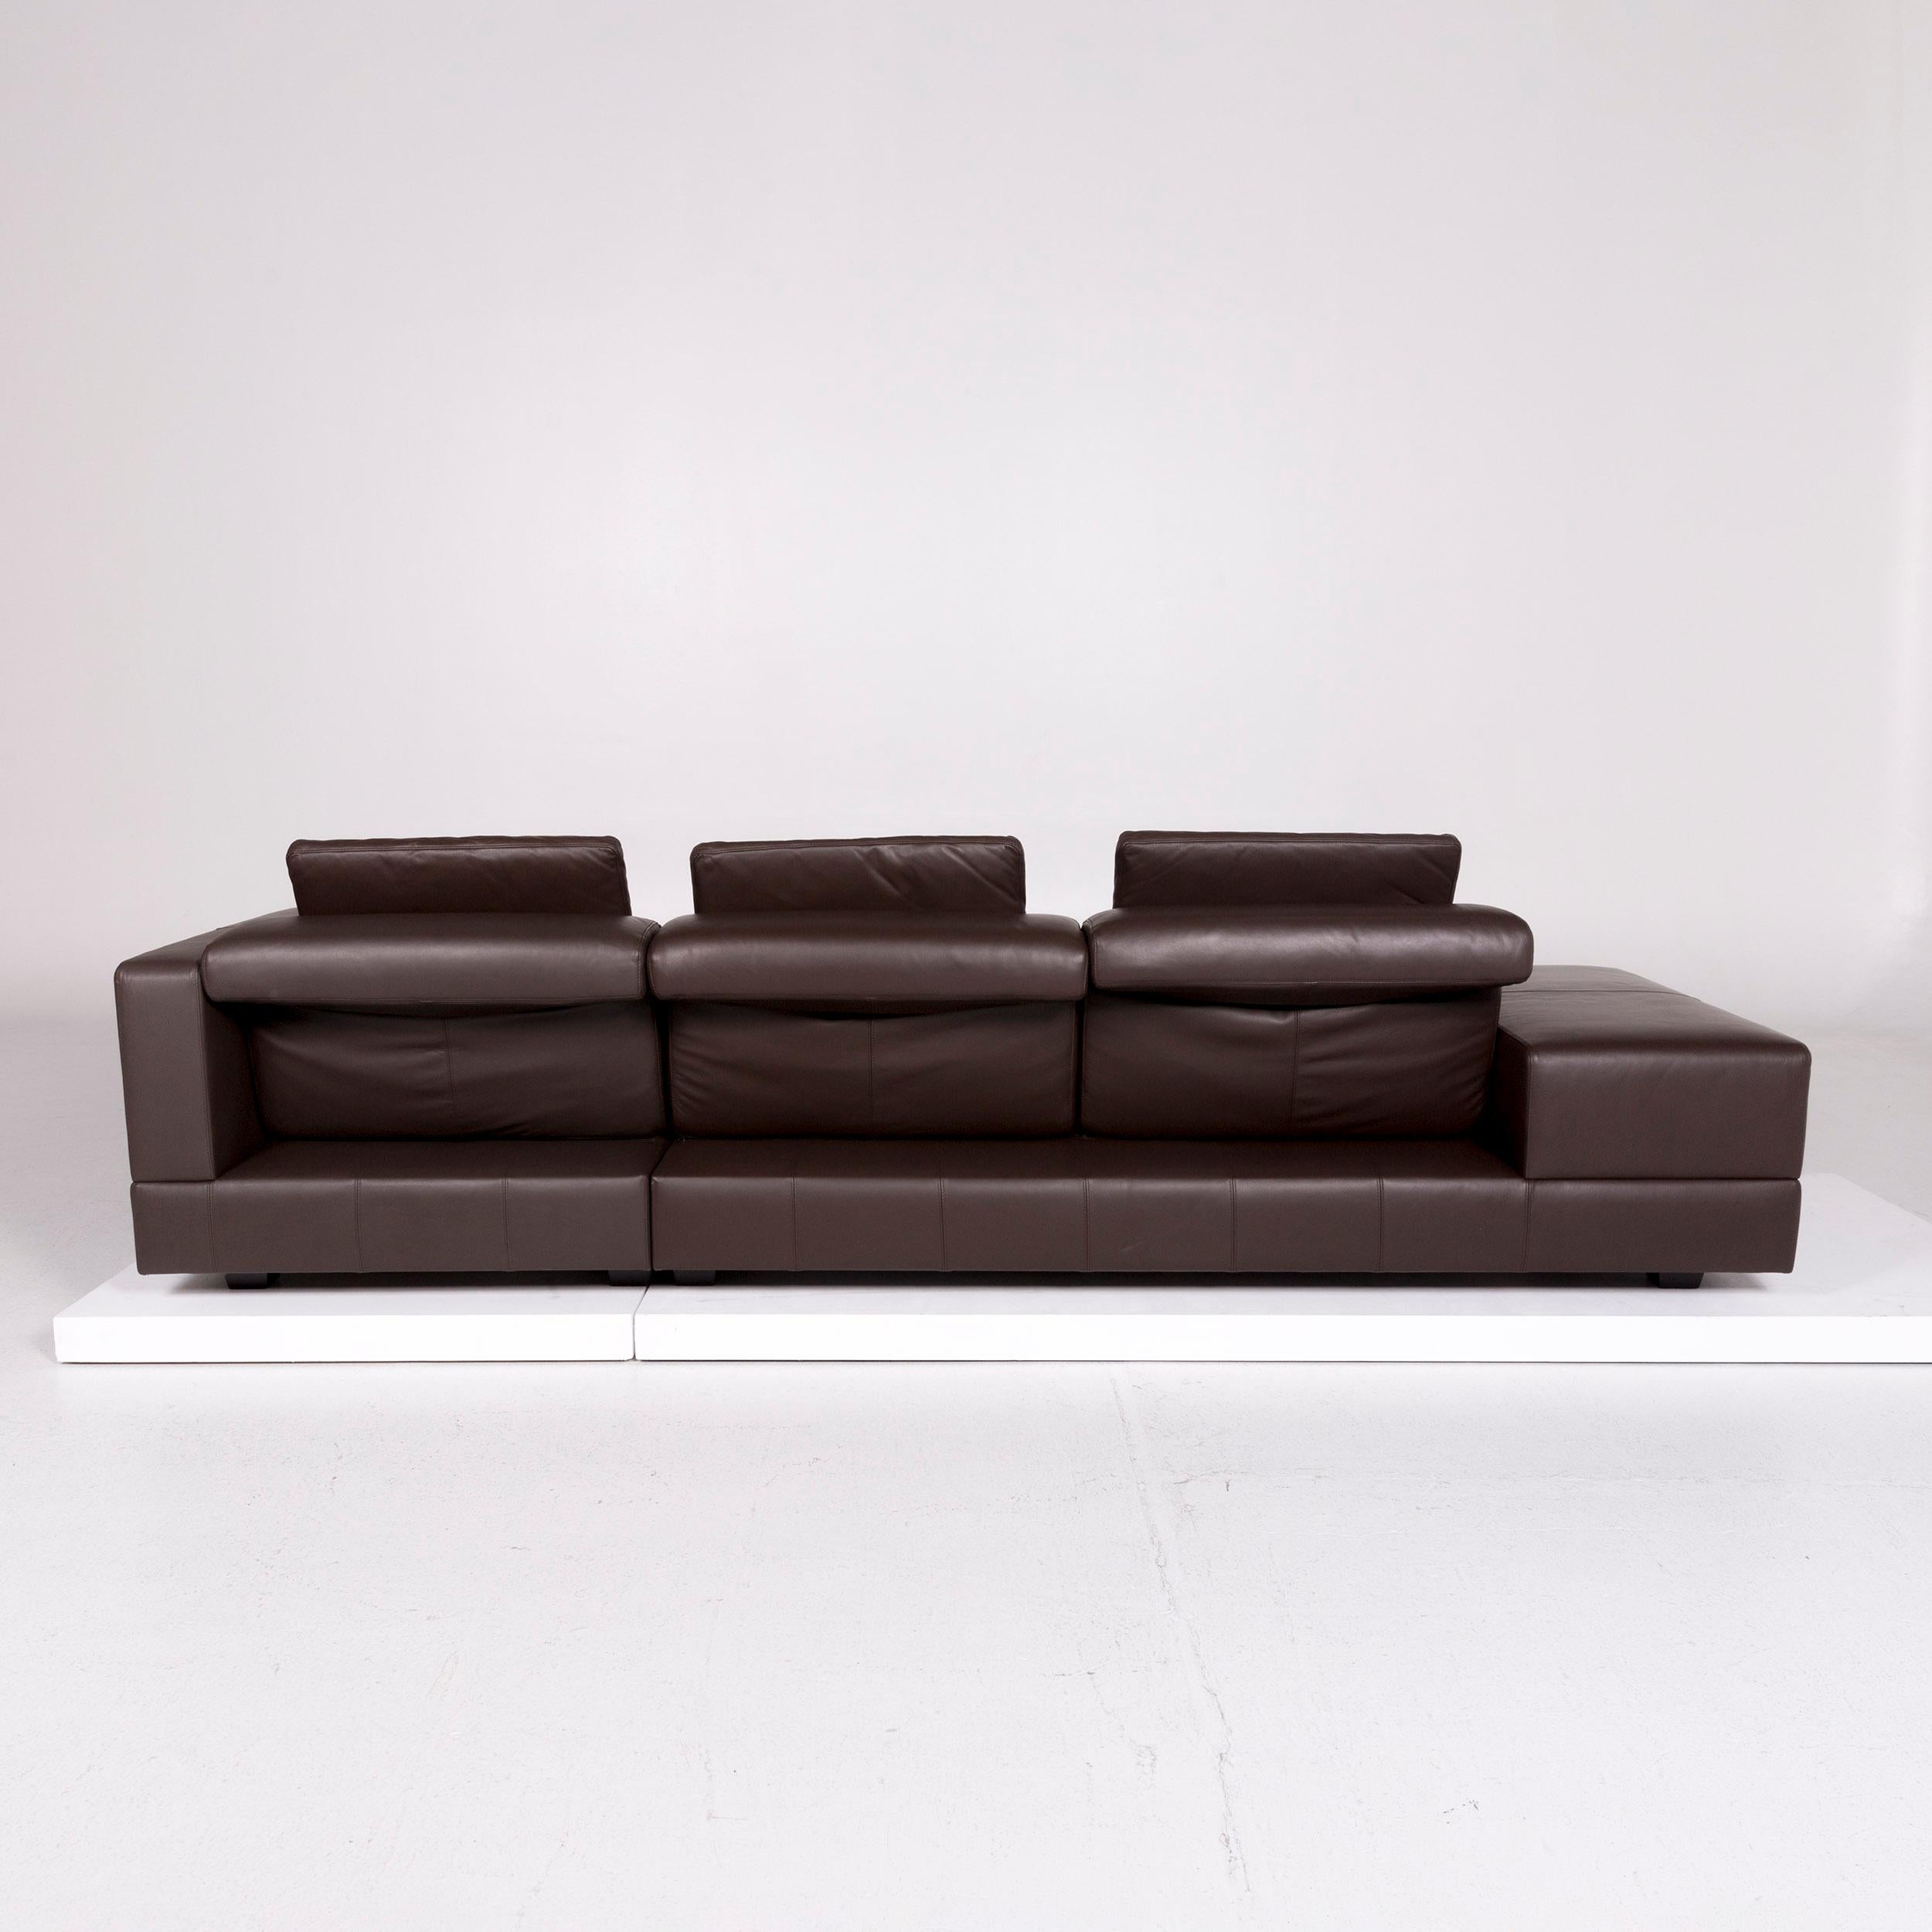 WK Wohnen Leather Corner Sofa Brown Dark Brown Sofa Couch 3